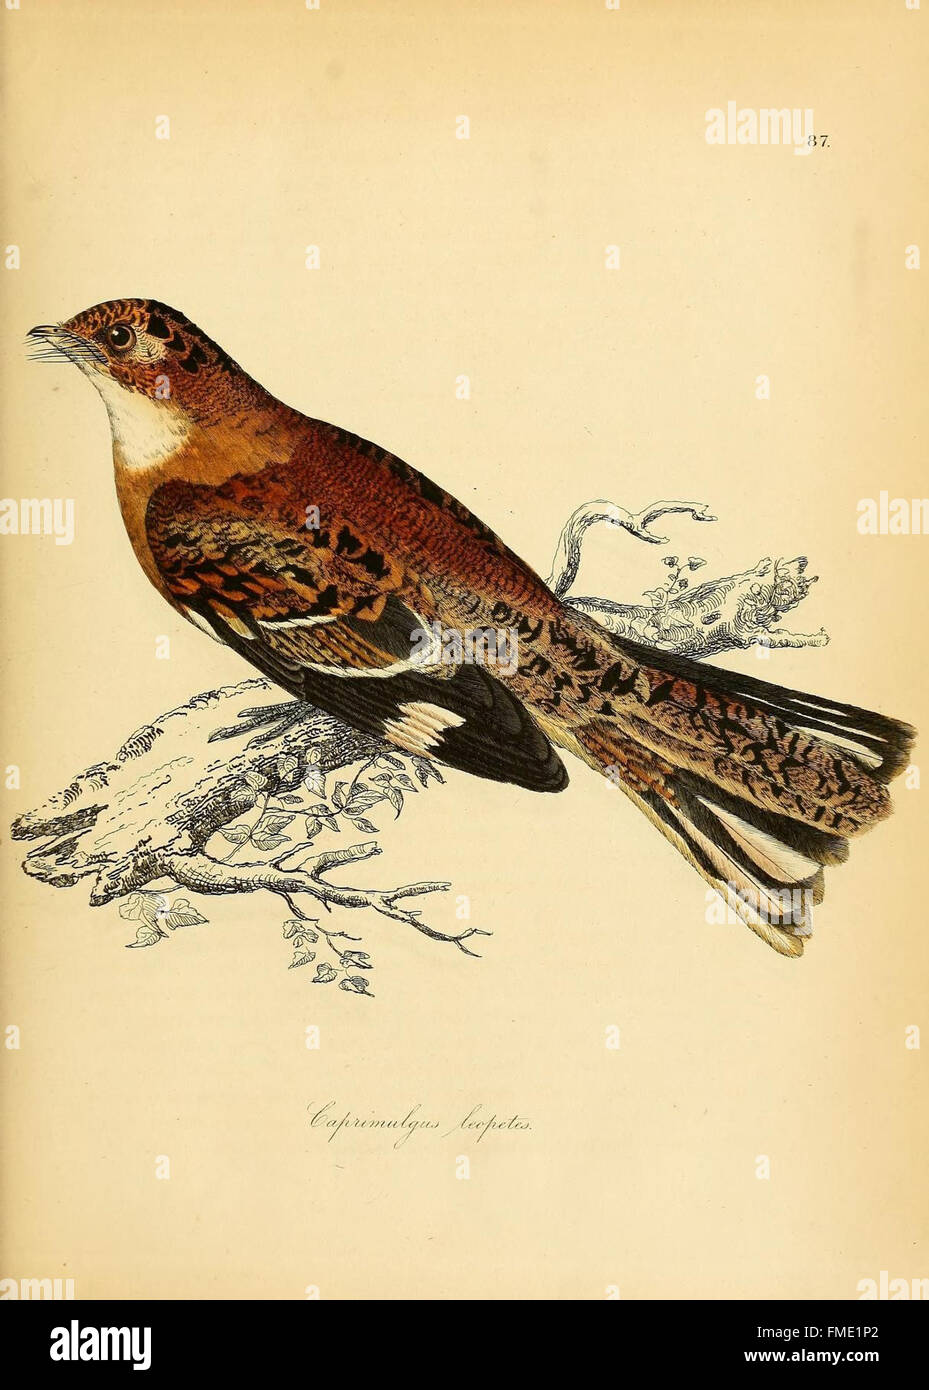 Illustrations de l'ornithologie (87) plaque de couleur Banque D'Images